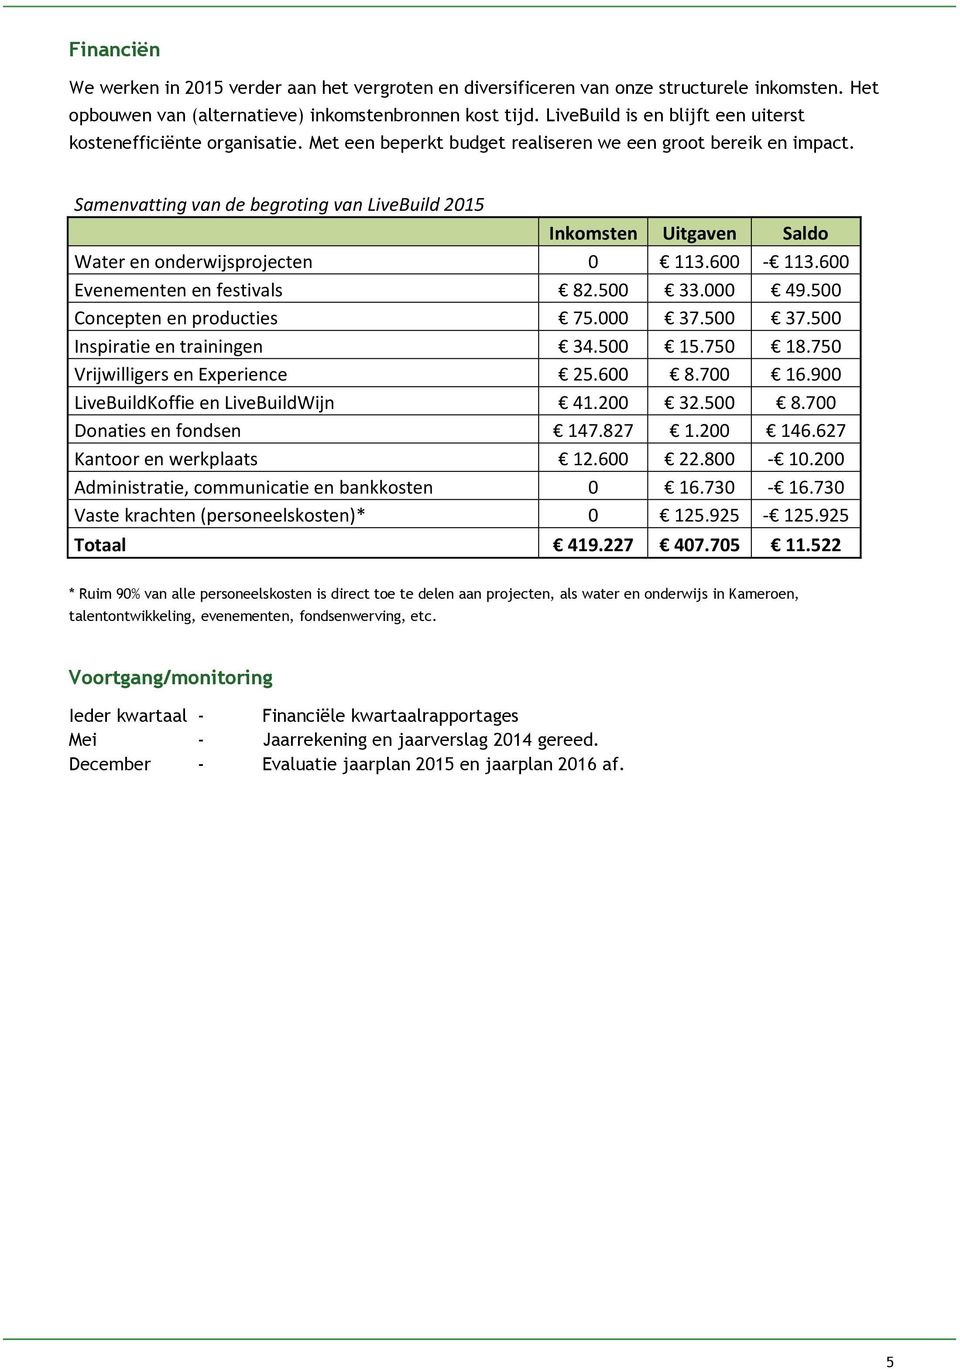 Samenvatting van de begroting van LiveBuild 2015 Inkomsten Uitgaven Saldo Water en onderwijsprojecten 0 113.600-113.600 Evenementen en festivals 82.500 33.000 49.500 Concepten en producties 75.000 37.